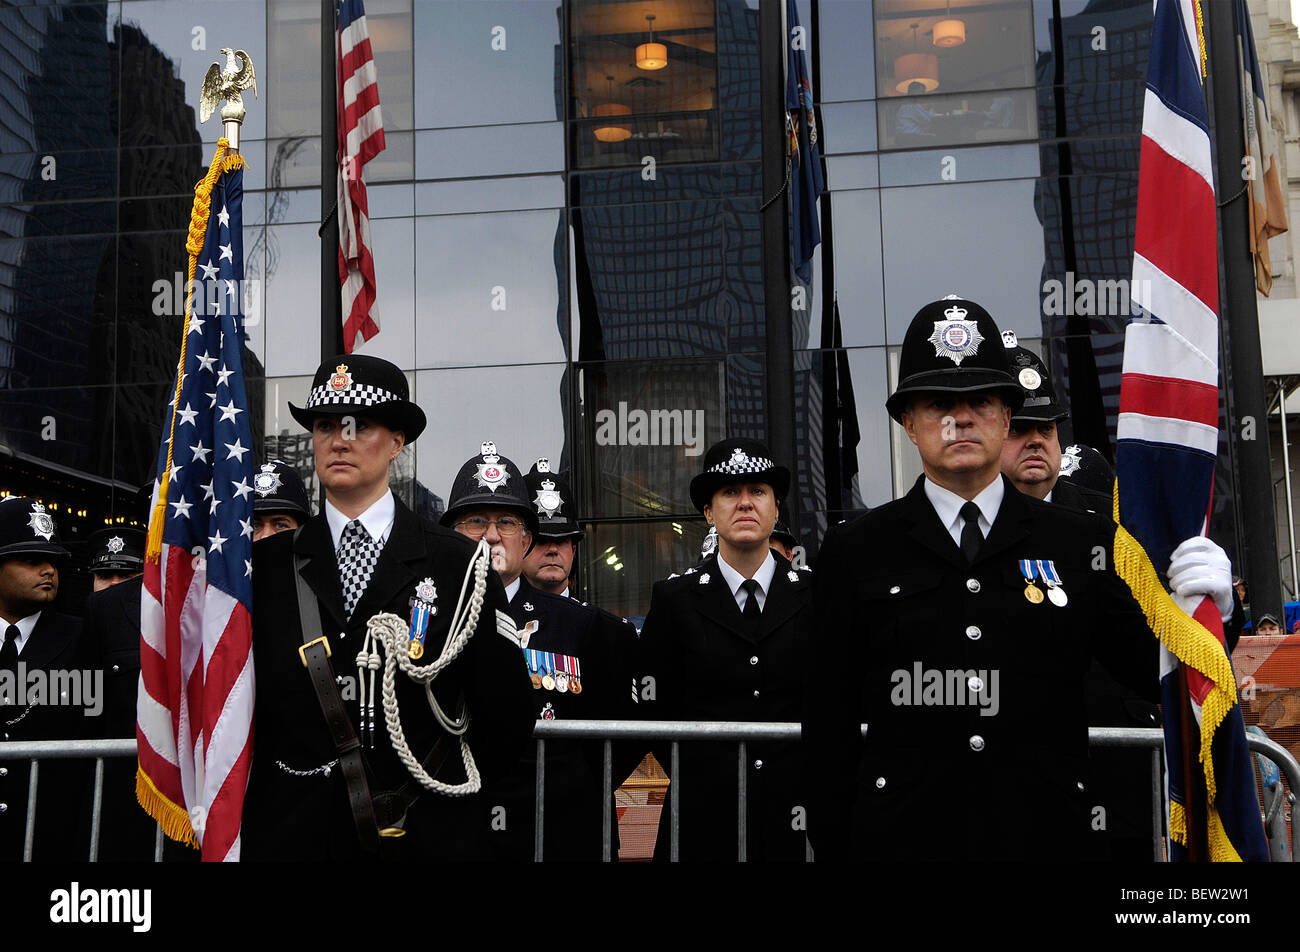 Eine Delegation von Polizisten an die Trauerfeier 2007 Word Trade Center in New York teilnehmen. Stockfoto